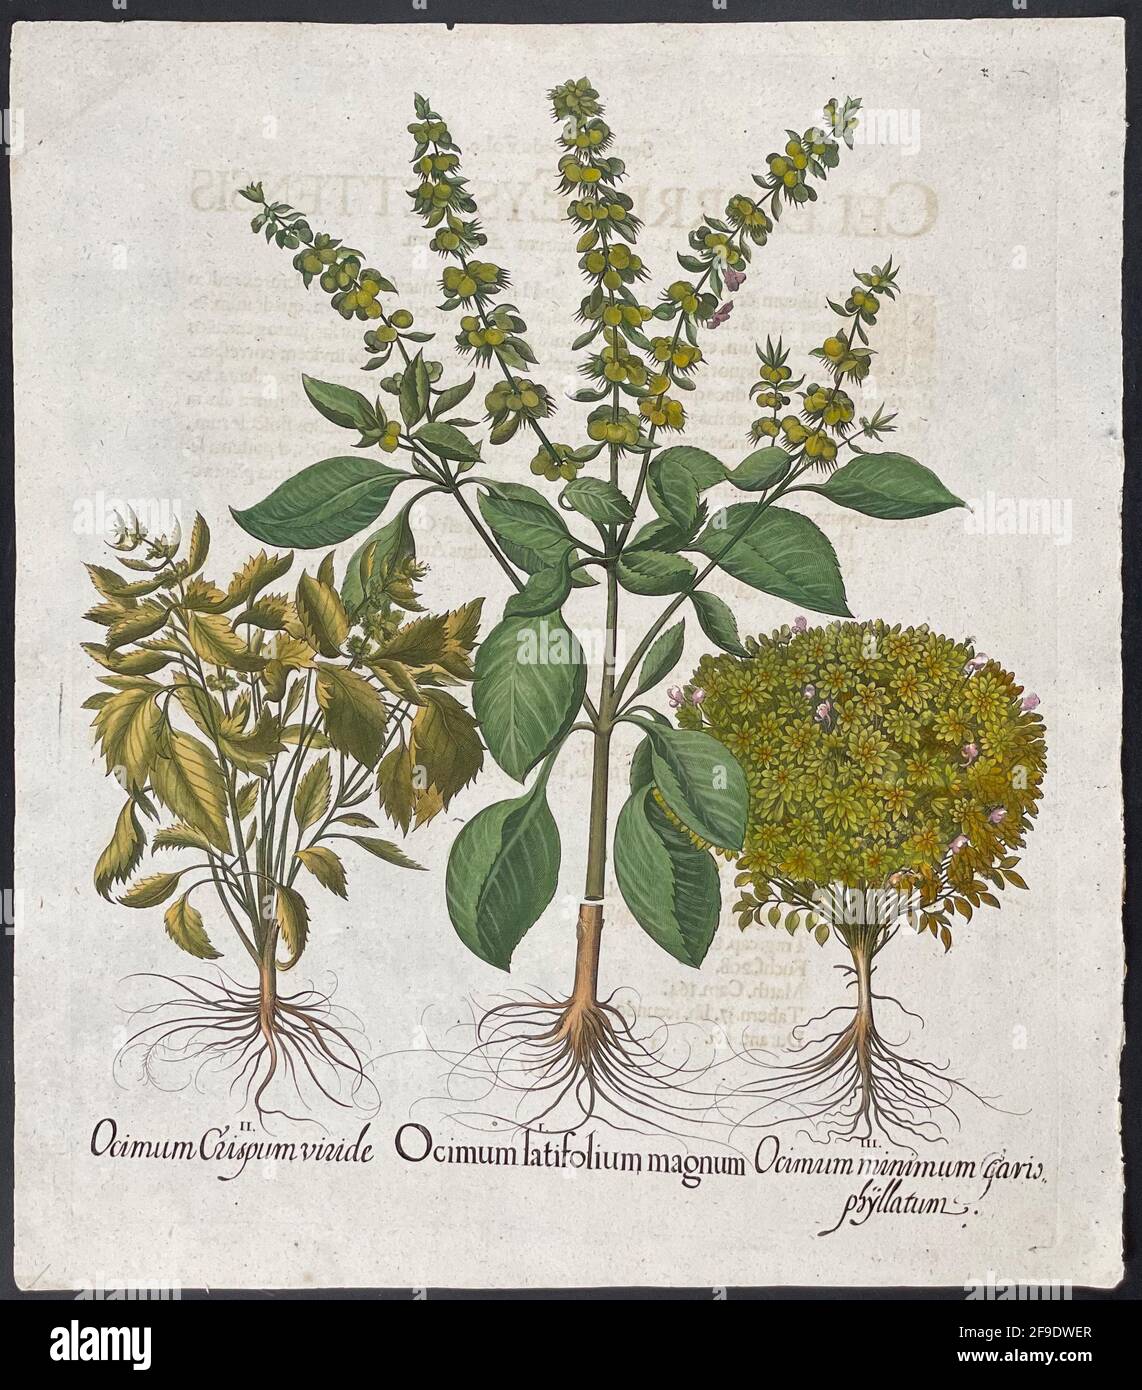 Ocimum Crispum viride, Ocimum latifolium magnum, Ocimum minimum caryophyllatum. Platte 516. Kunst von Basilius Besler (1561–1629) Stockfoto